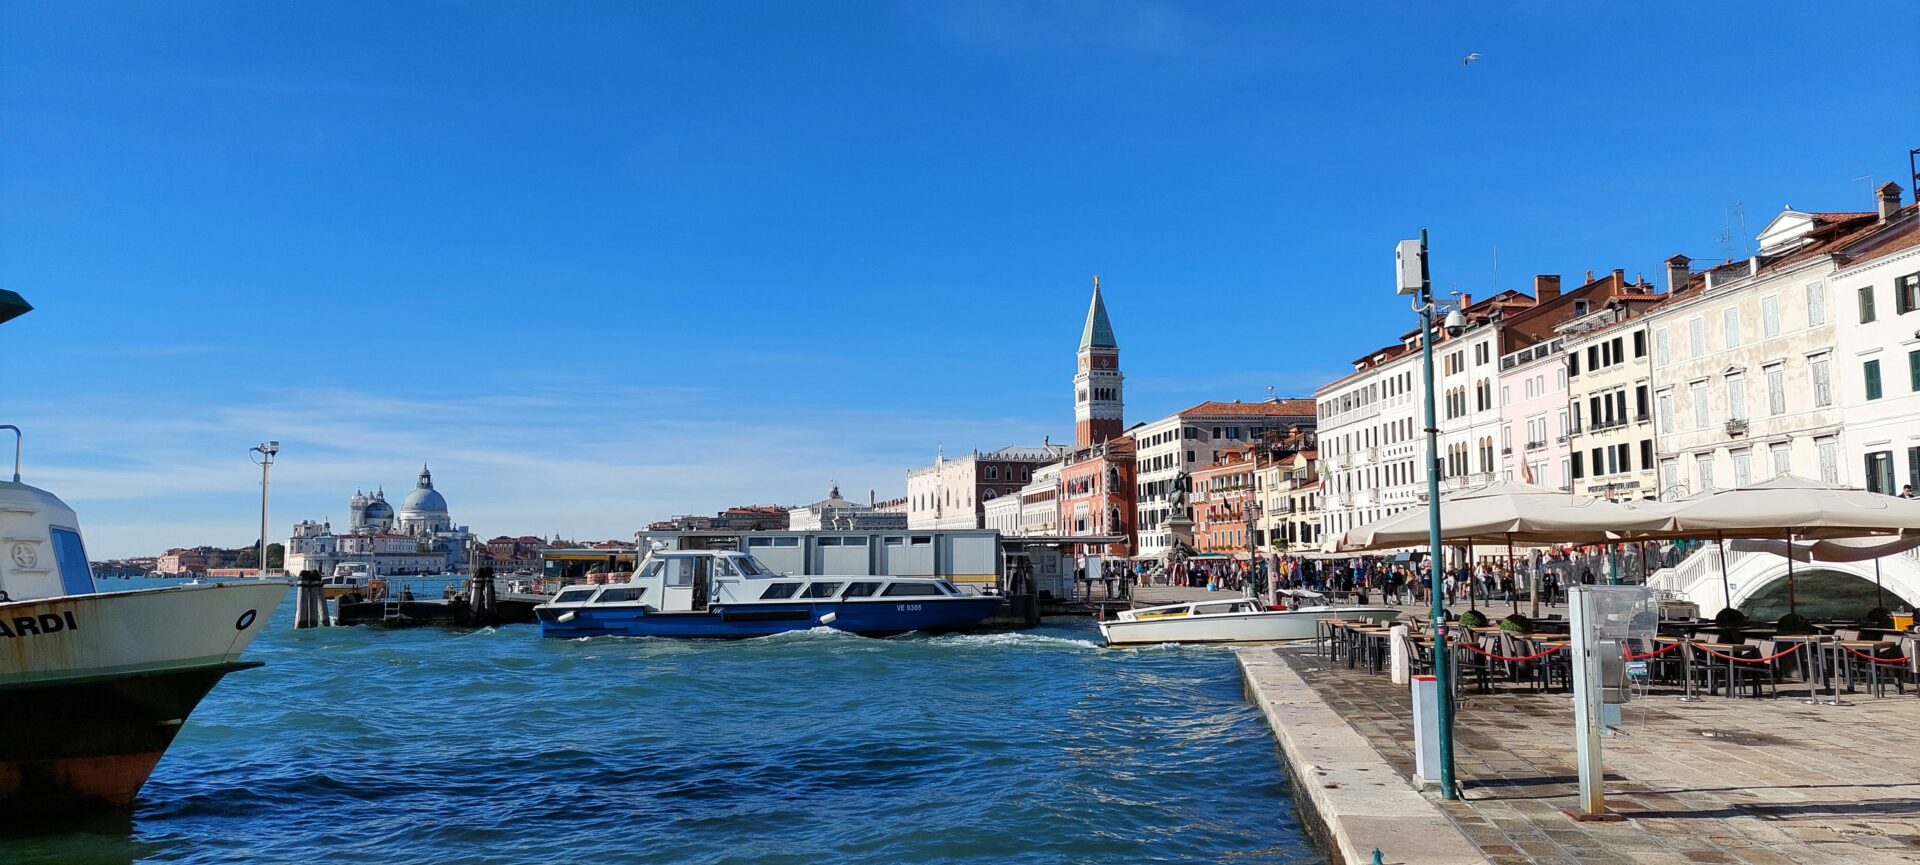 Vaporeto Venecia à Venise: 6 expériences et 16 photos